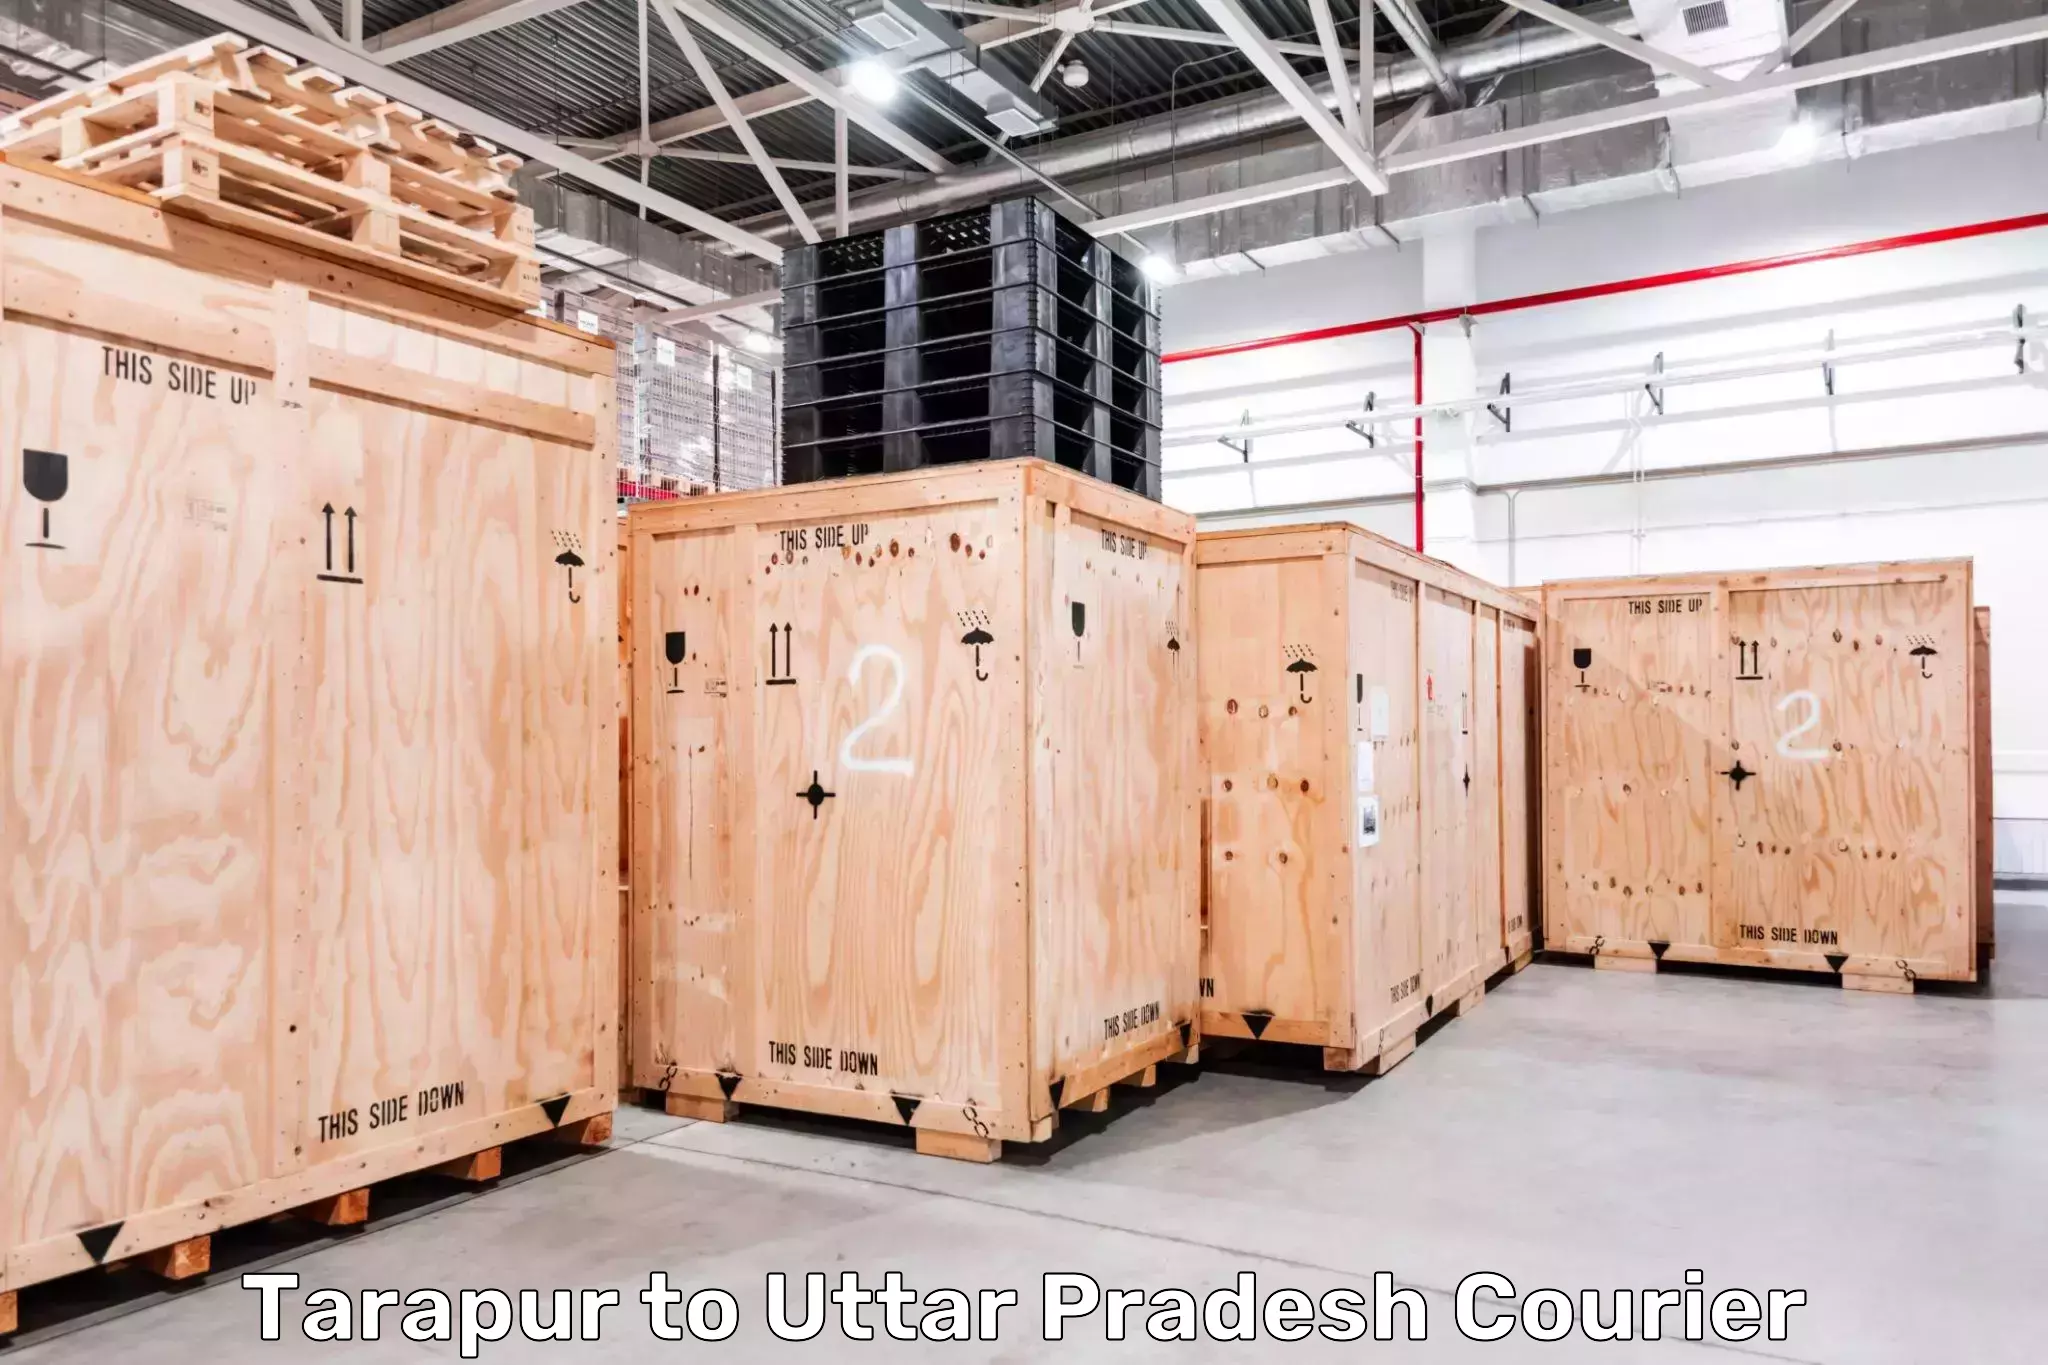 Cargo courier service Tarapur to Unchahar